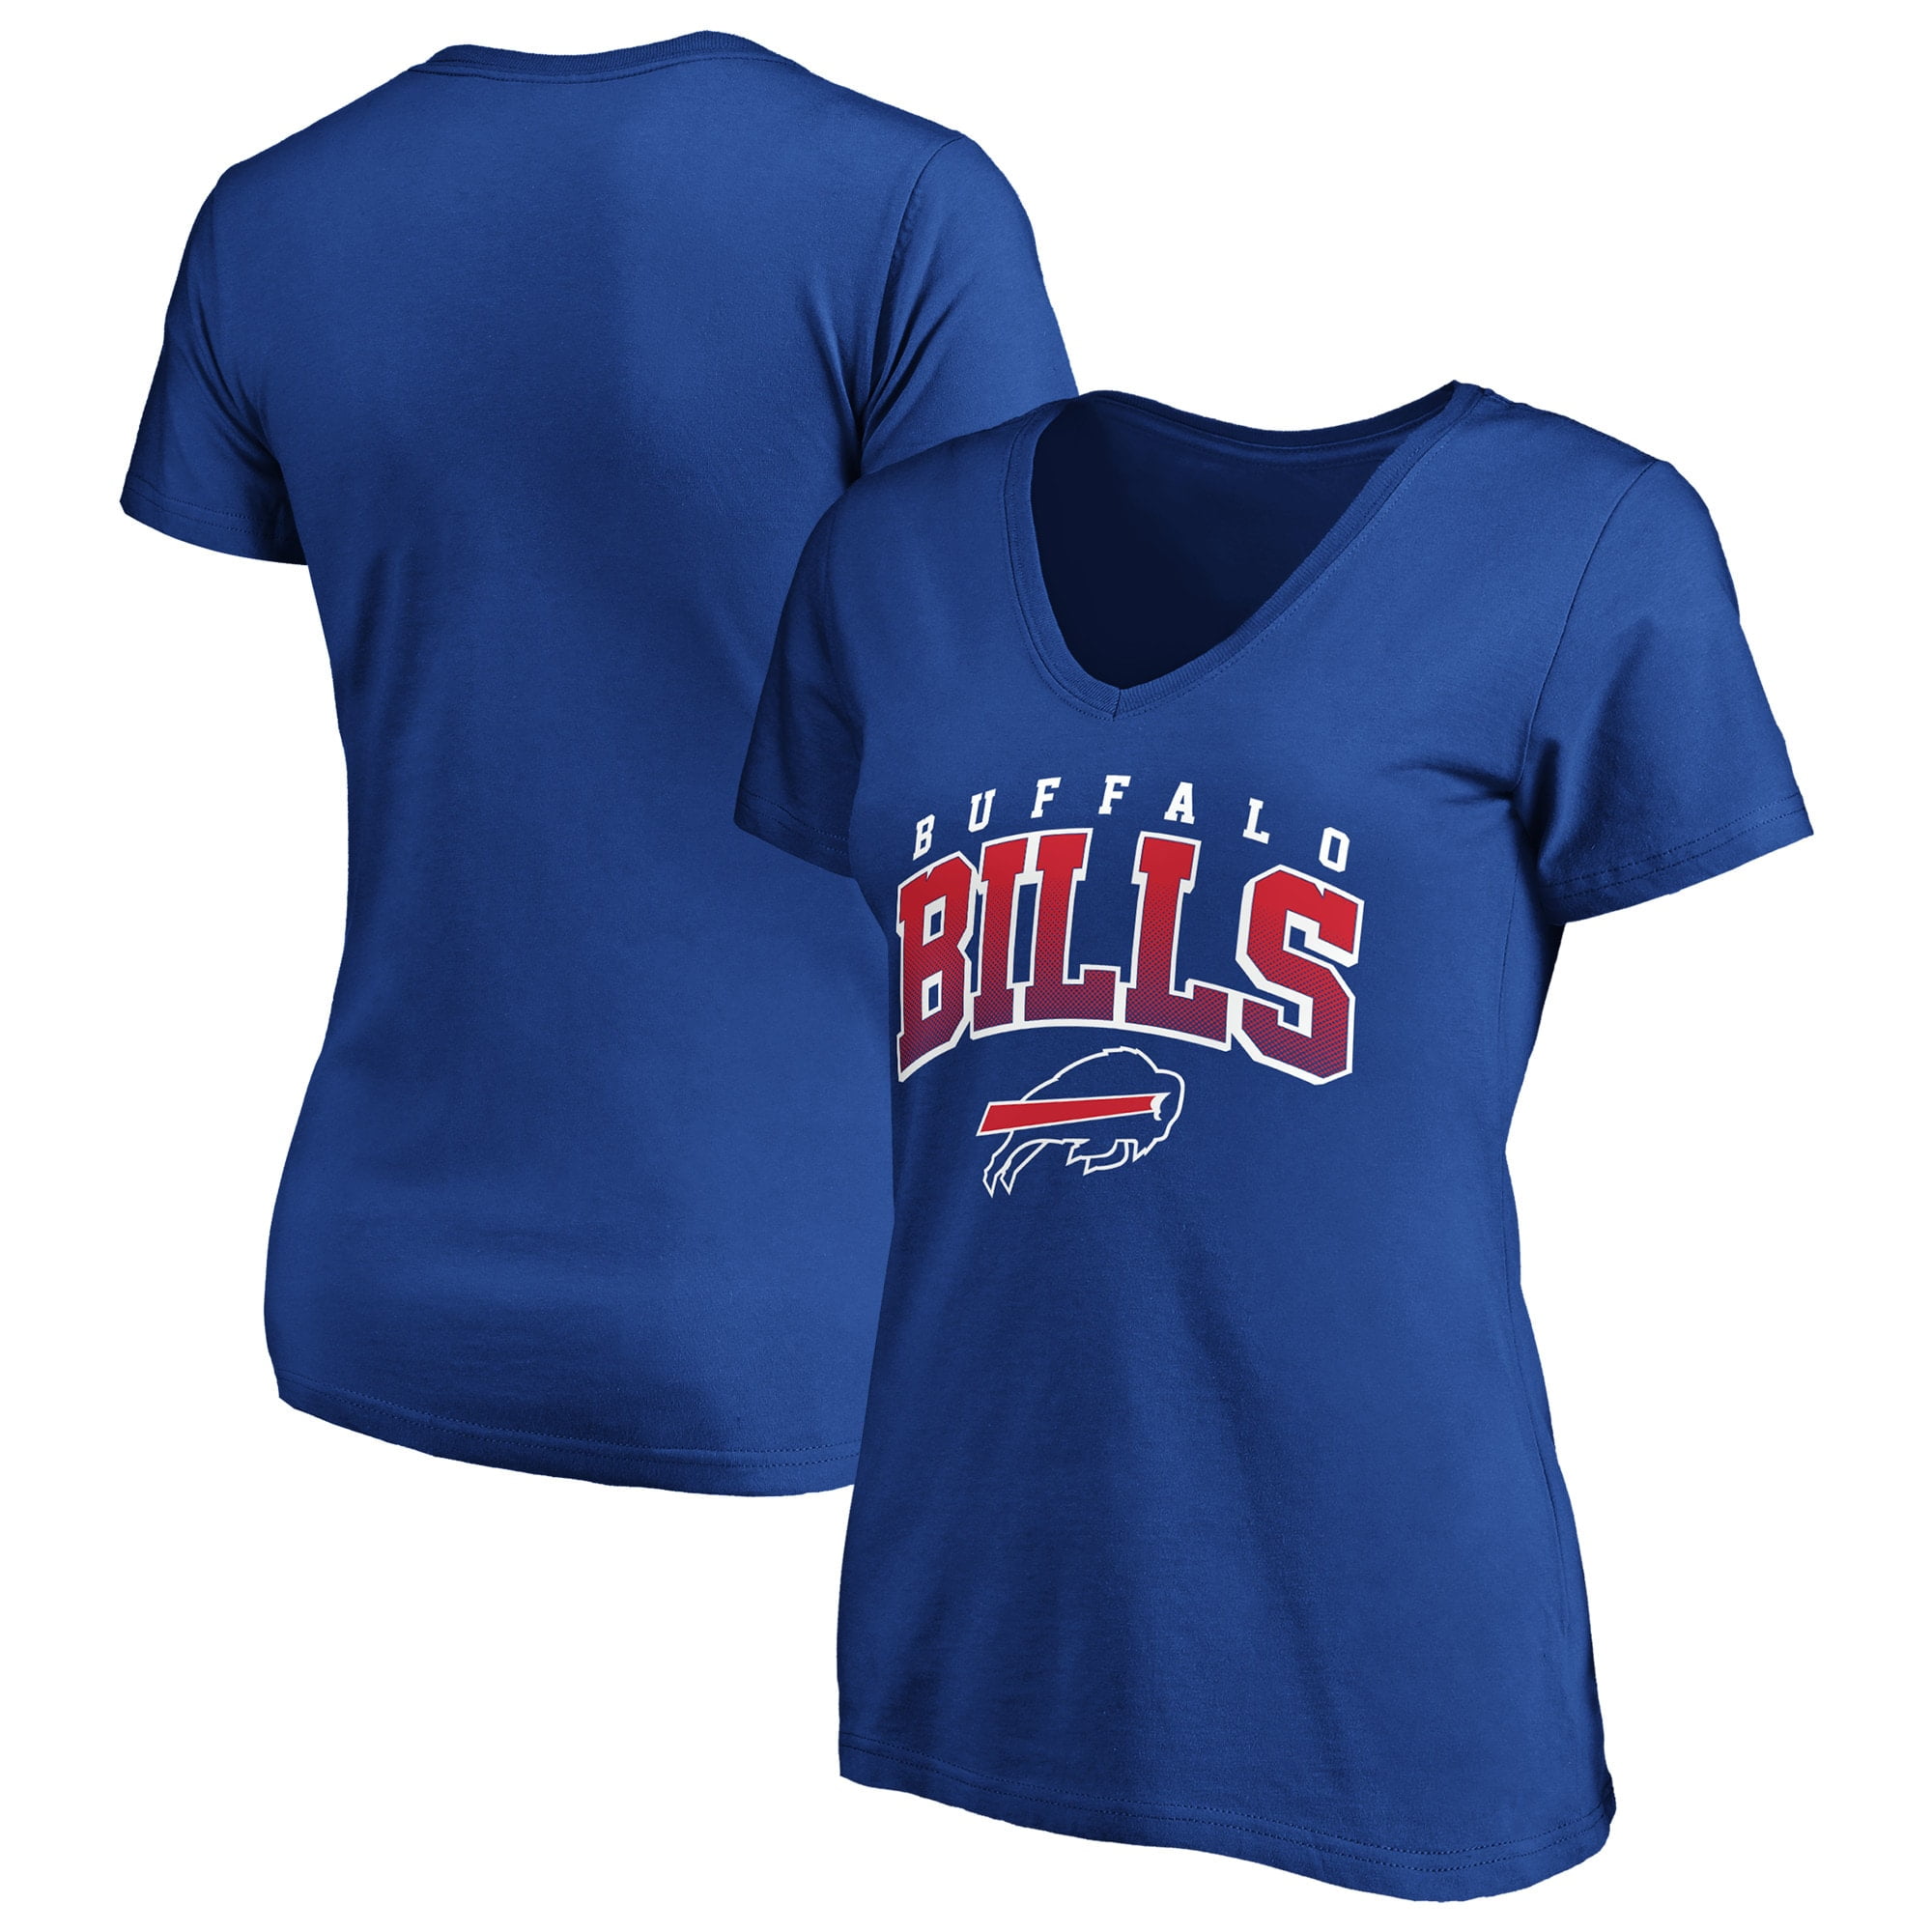 buffalo bills shirts cheap